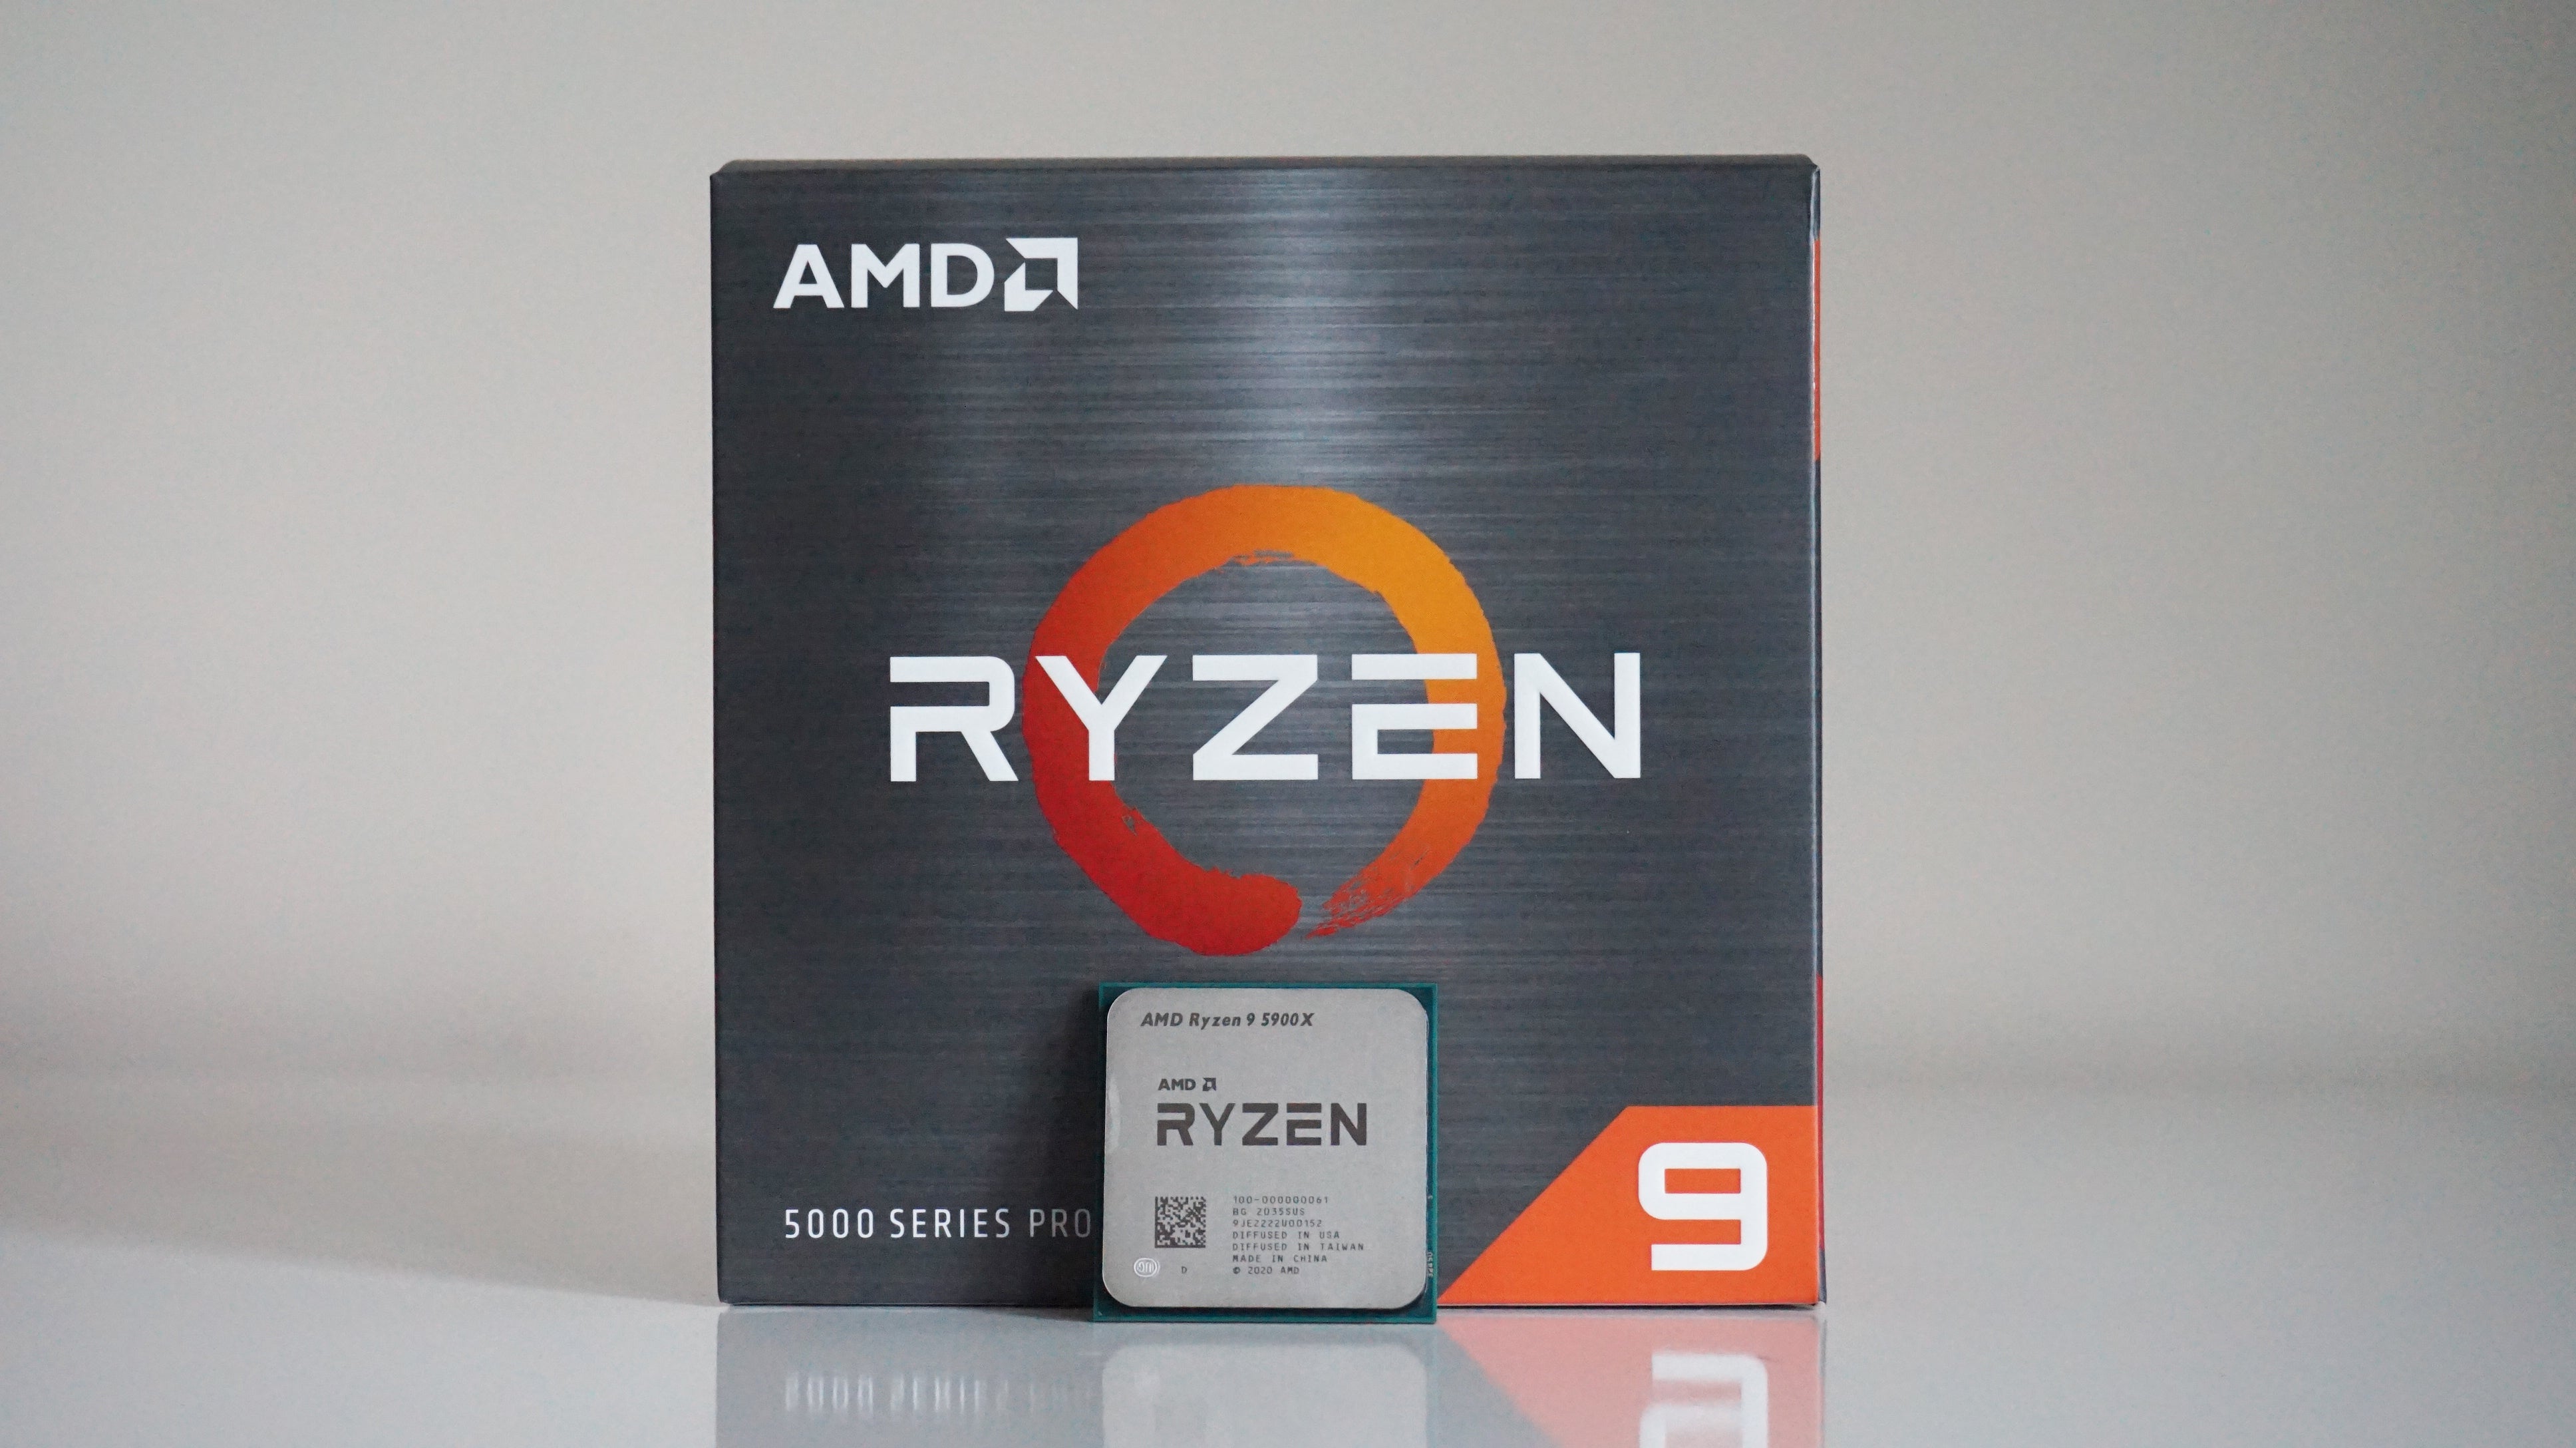 Prosesor AMD Ryzen 9 5900X yang sangat cepat adalah £342 setelah pengurangan £168